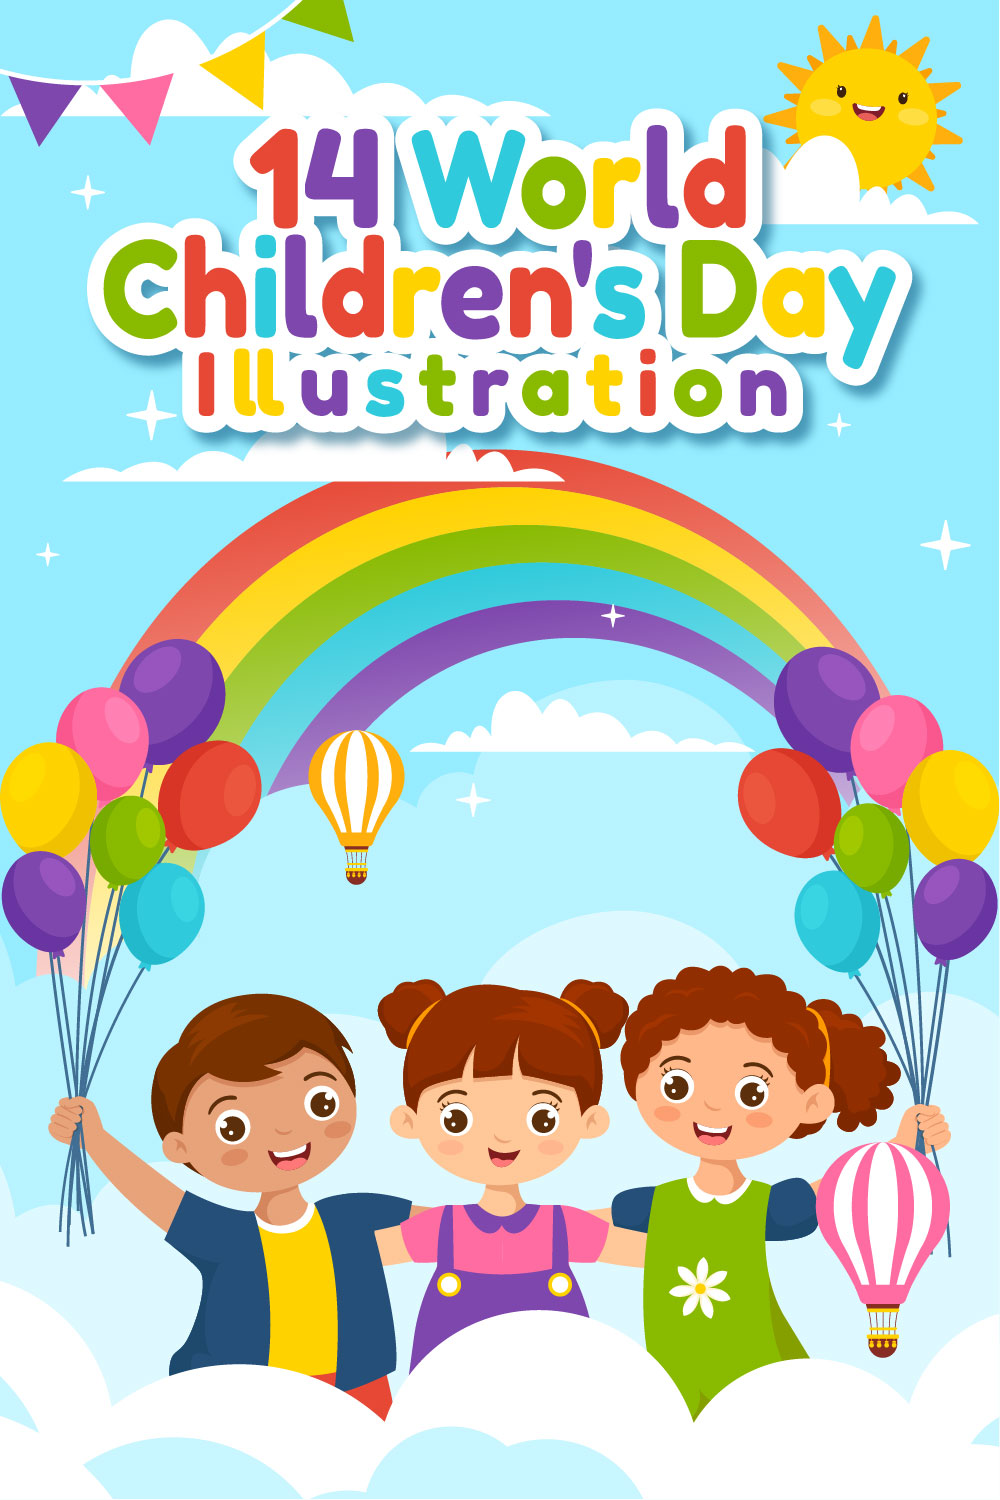 14 World Children's Day Illustration pinterest preview image.